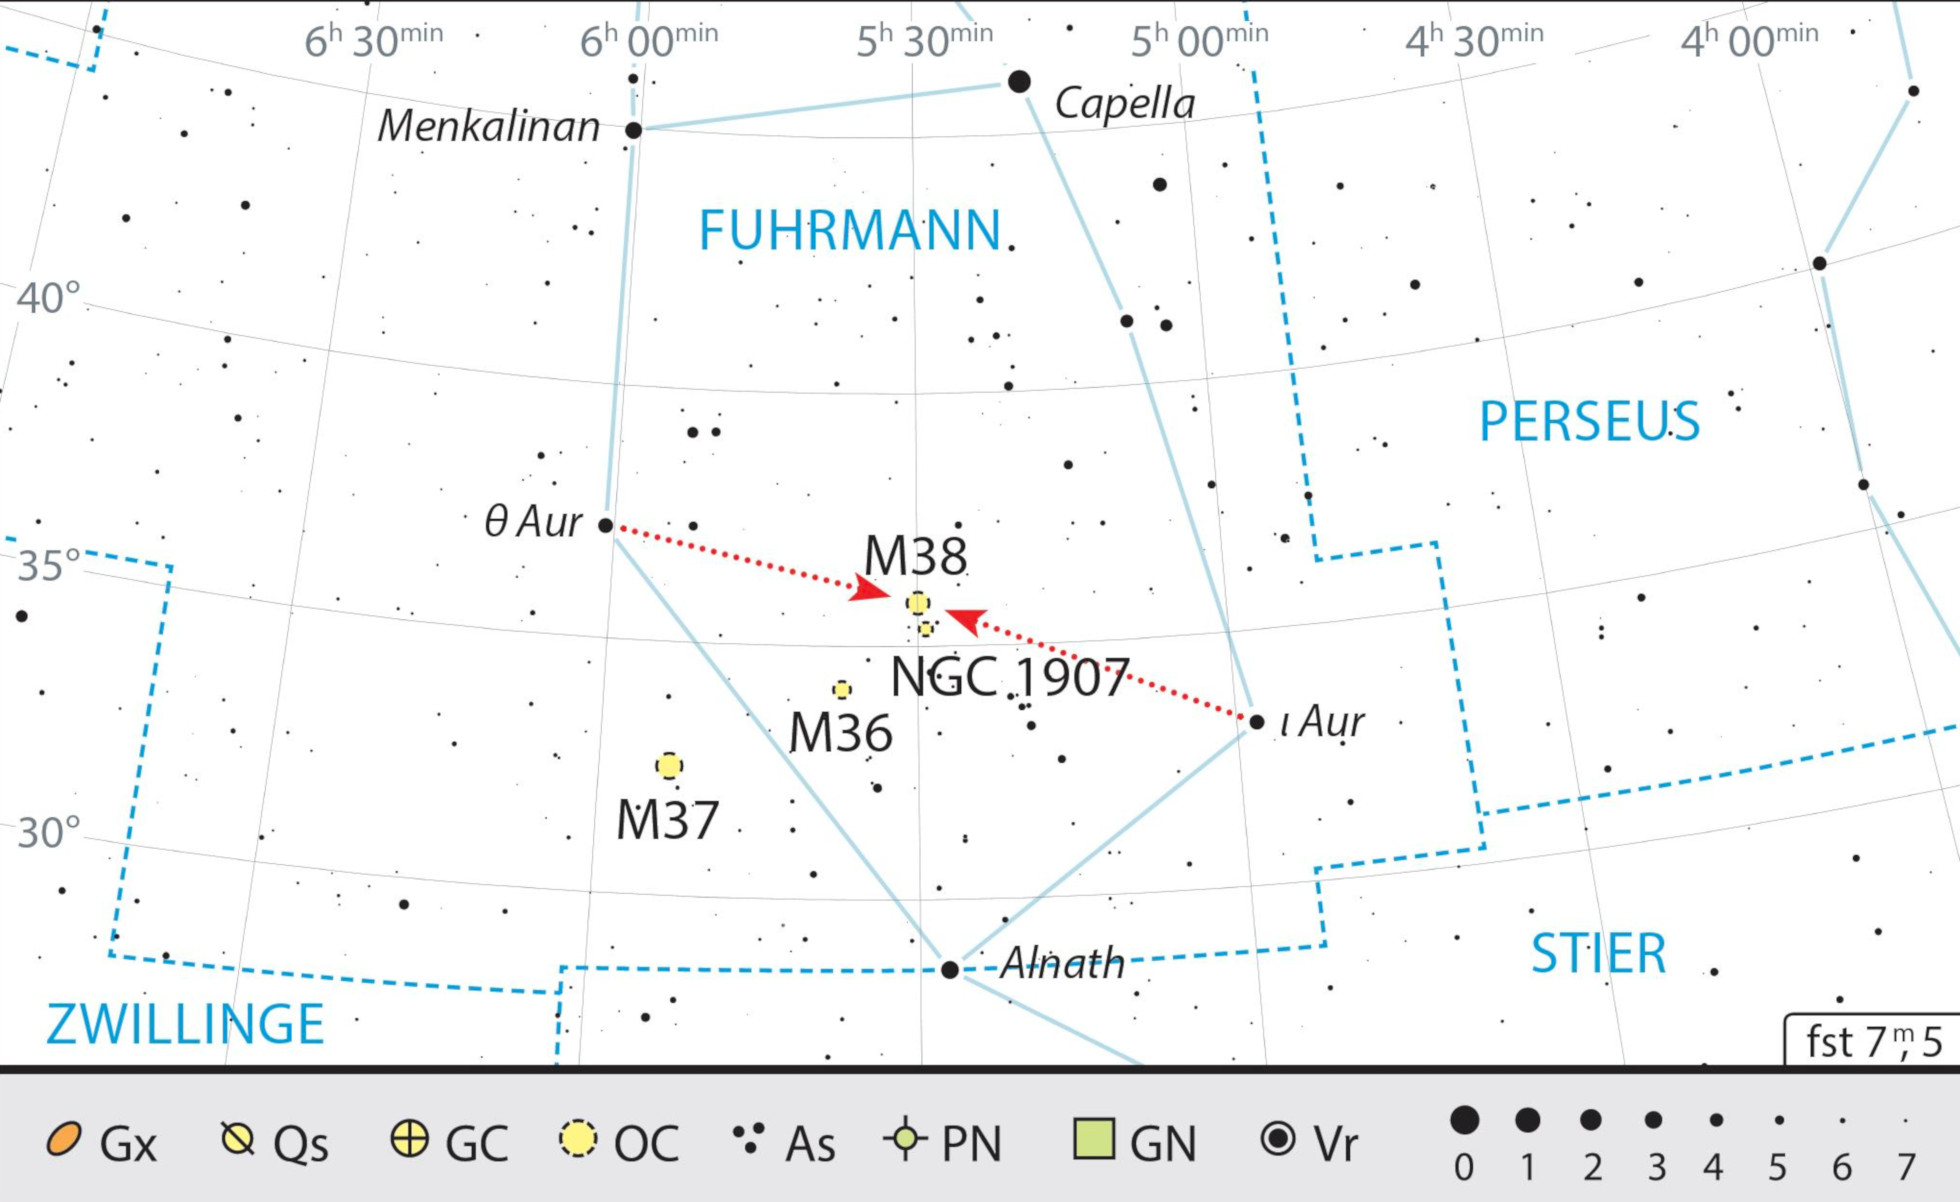 I due ammassi sono facili da individuare tra le stelle ι e θ
Aur finden. J Scholten